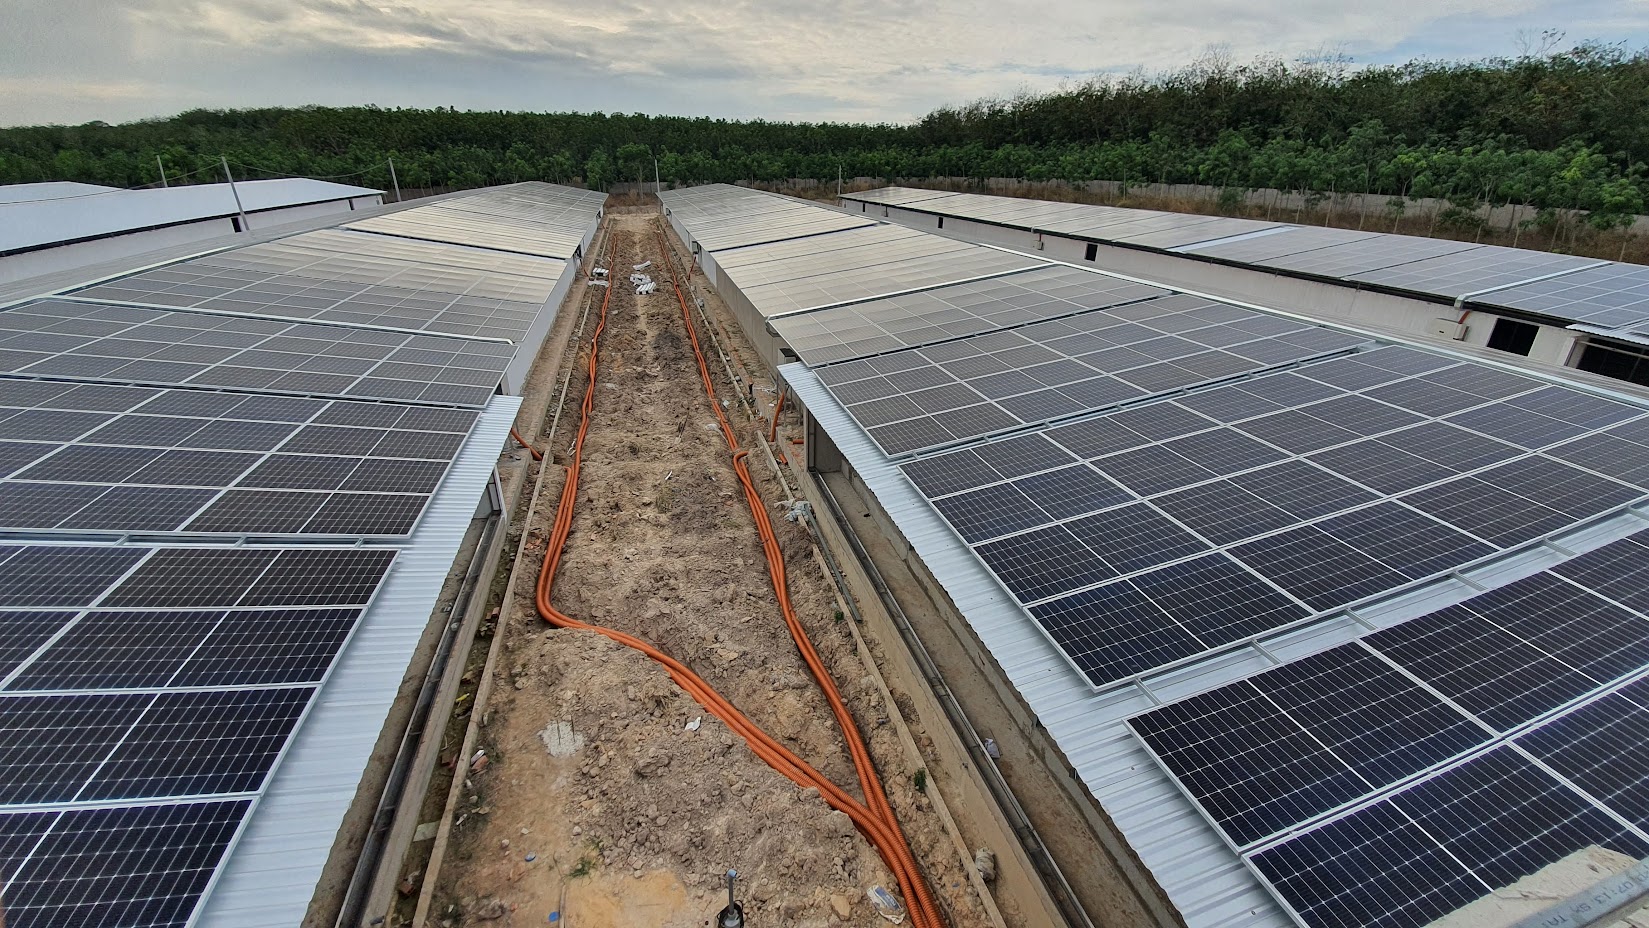 Trang trại chăn nuôi gia cầm ở bên dưới, bên trên mái sẽ lắp đặt các tấm pin năng lượng mặt trời. Mô hình sinh lợi kép đã được triển khai ở nhiều quốc gia trên thế giới và ngày càng phát triển tại Việt Nam